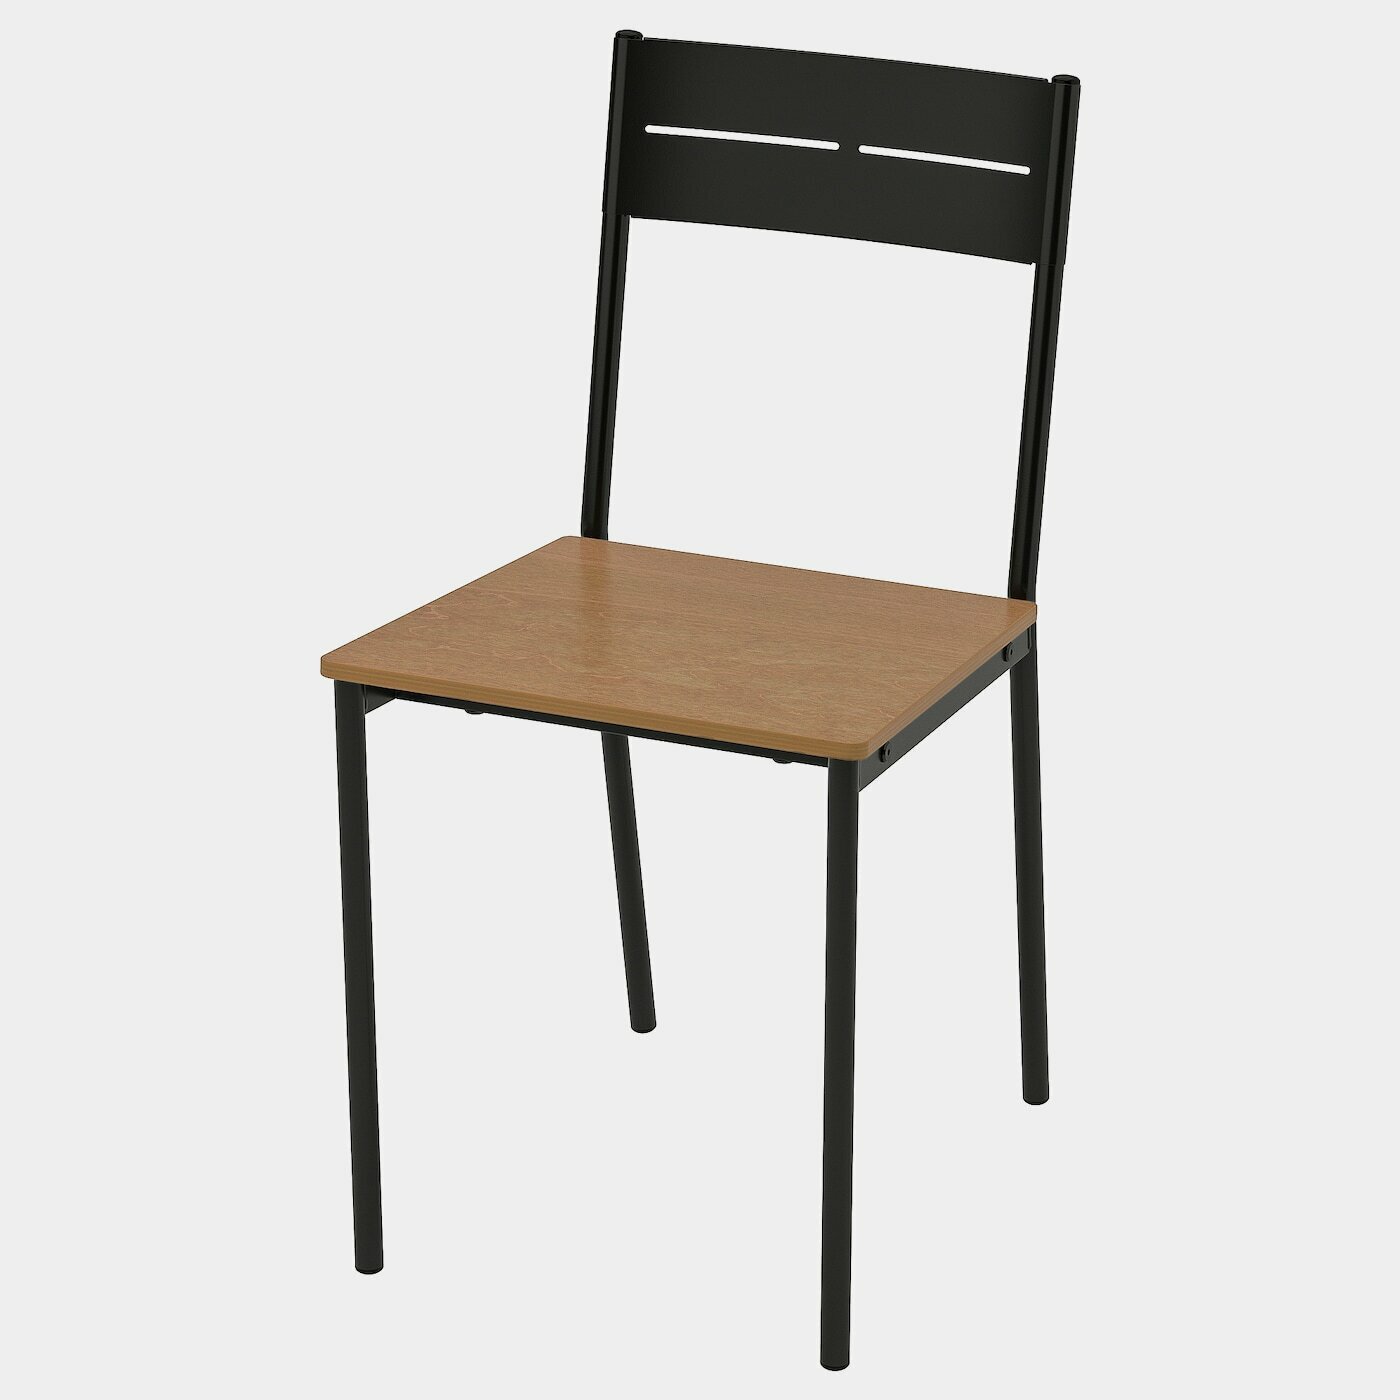 SANDSBERG Stuhl  -  - Möbel Ideen für dein Zuhause von Home Trends. Möbel Trends von Social Media Influencer für dein Skandi Zuhause.